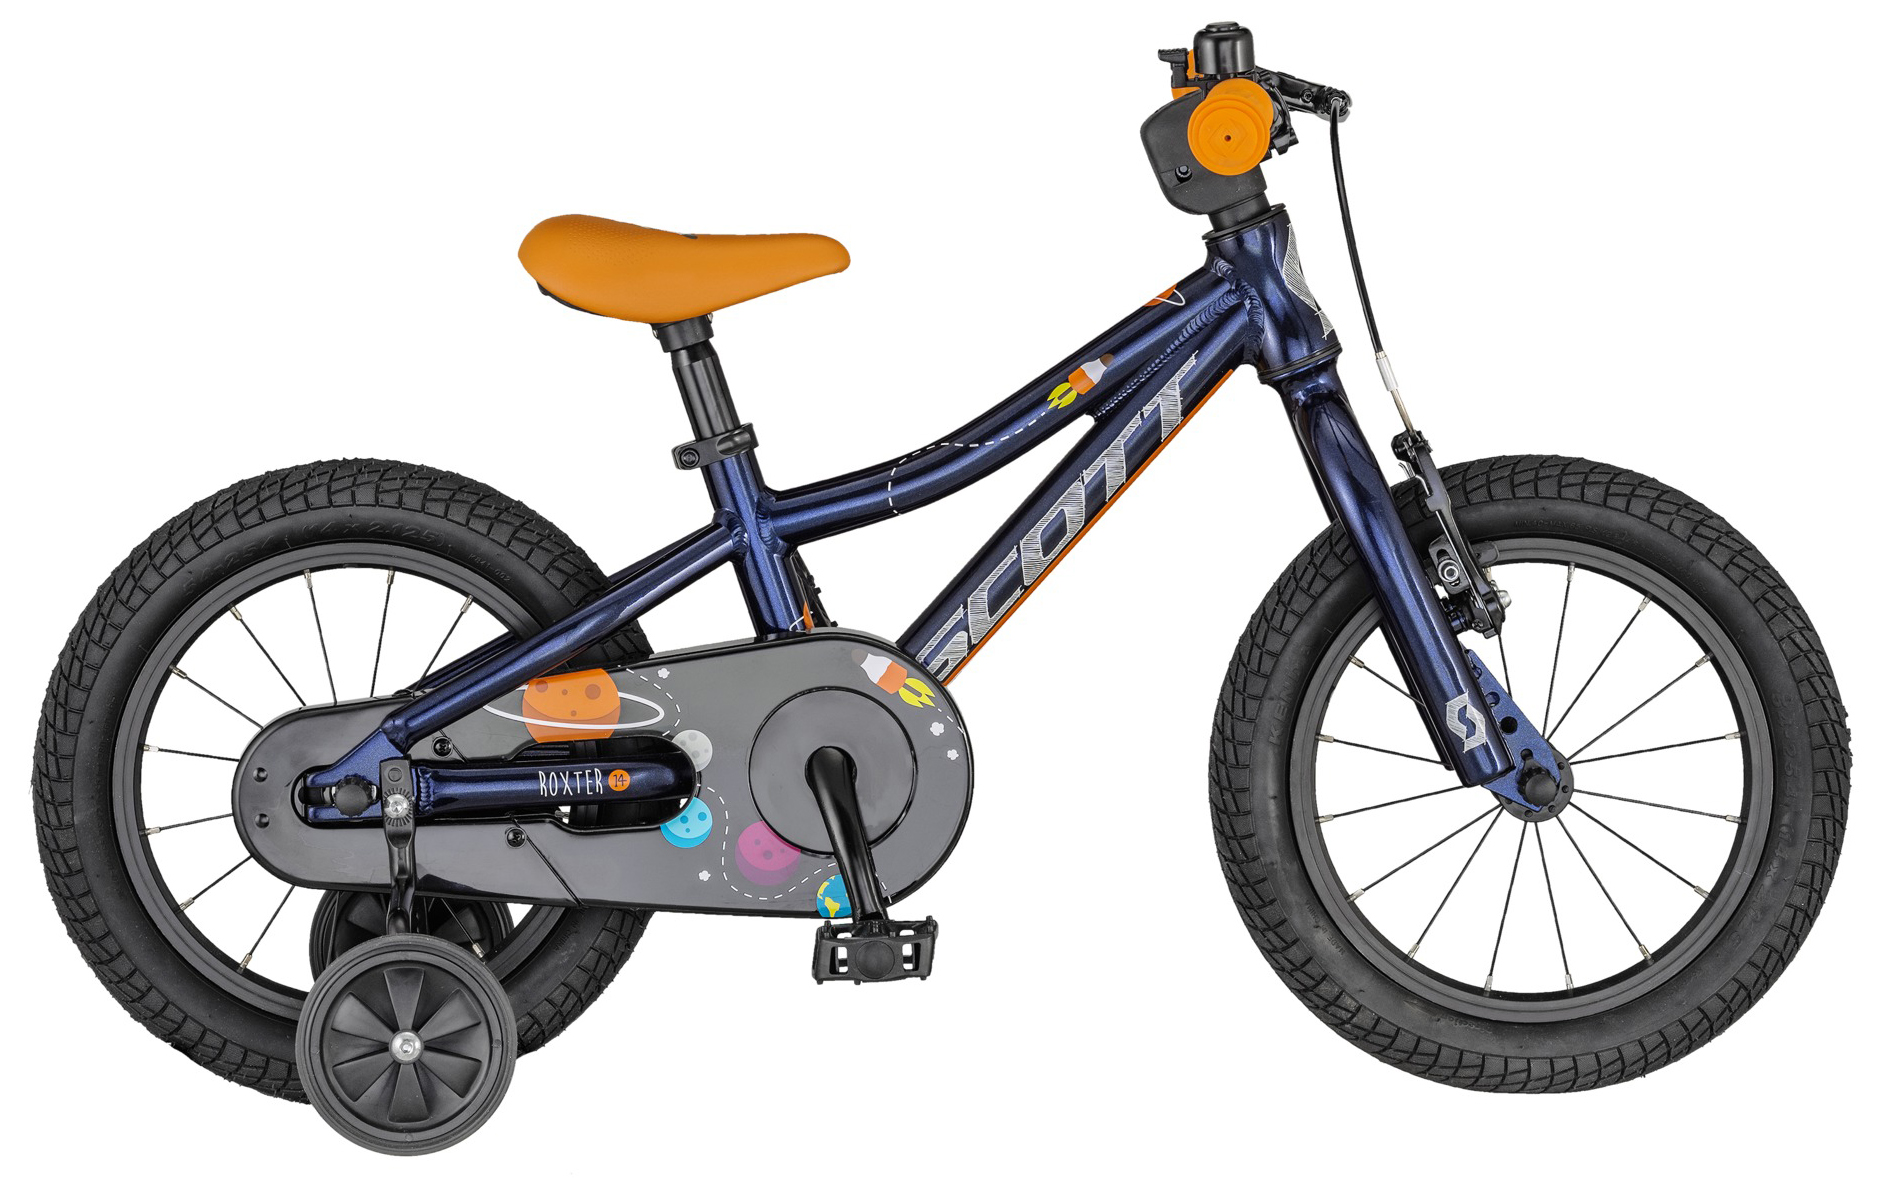  Отзывы о Детском велосипеде Scott Roxter 14 2021